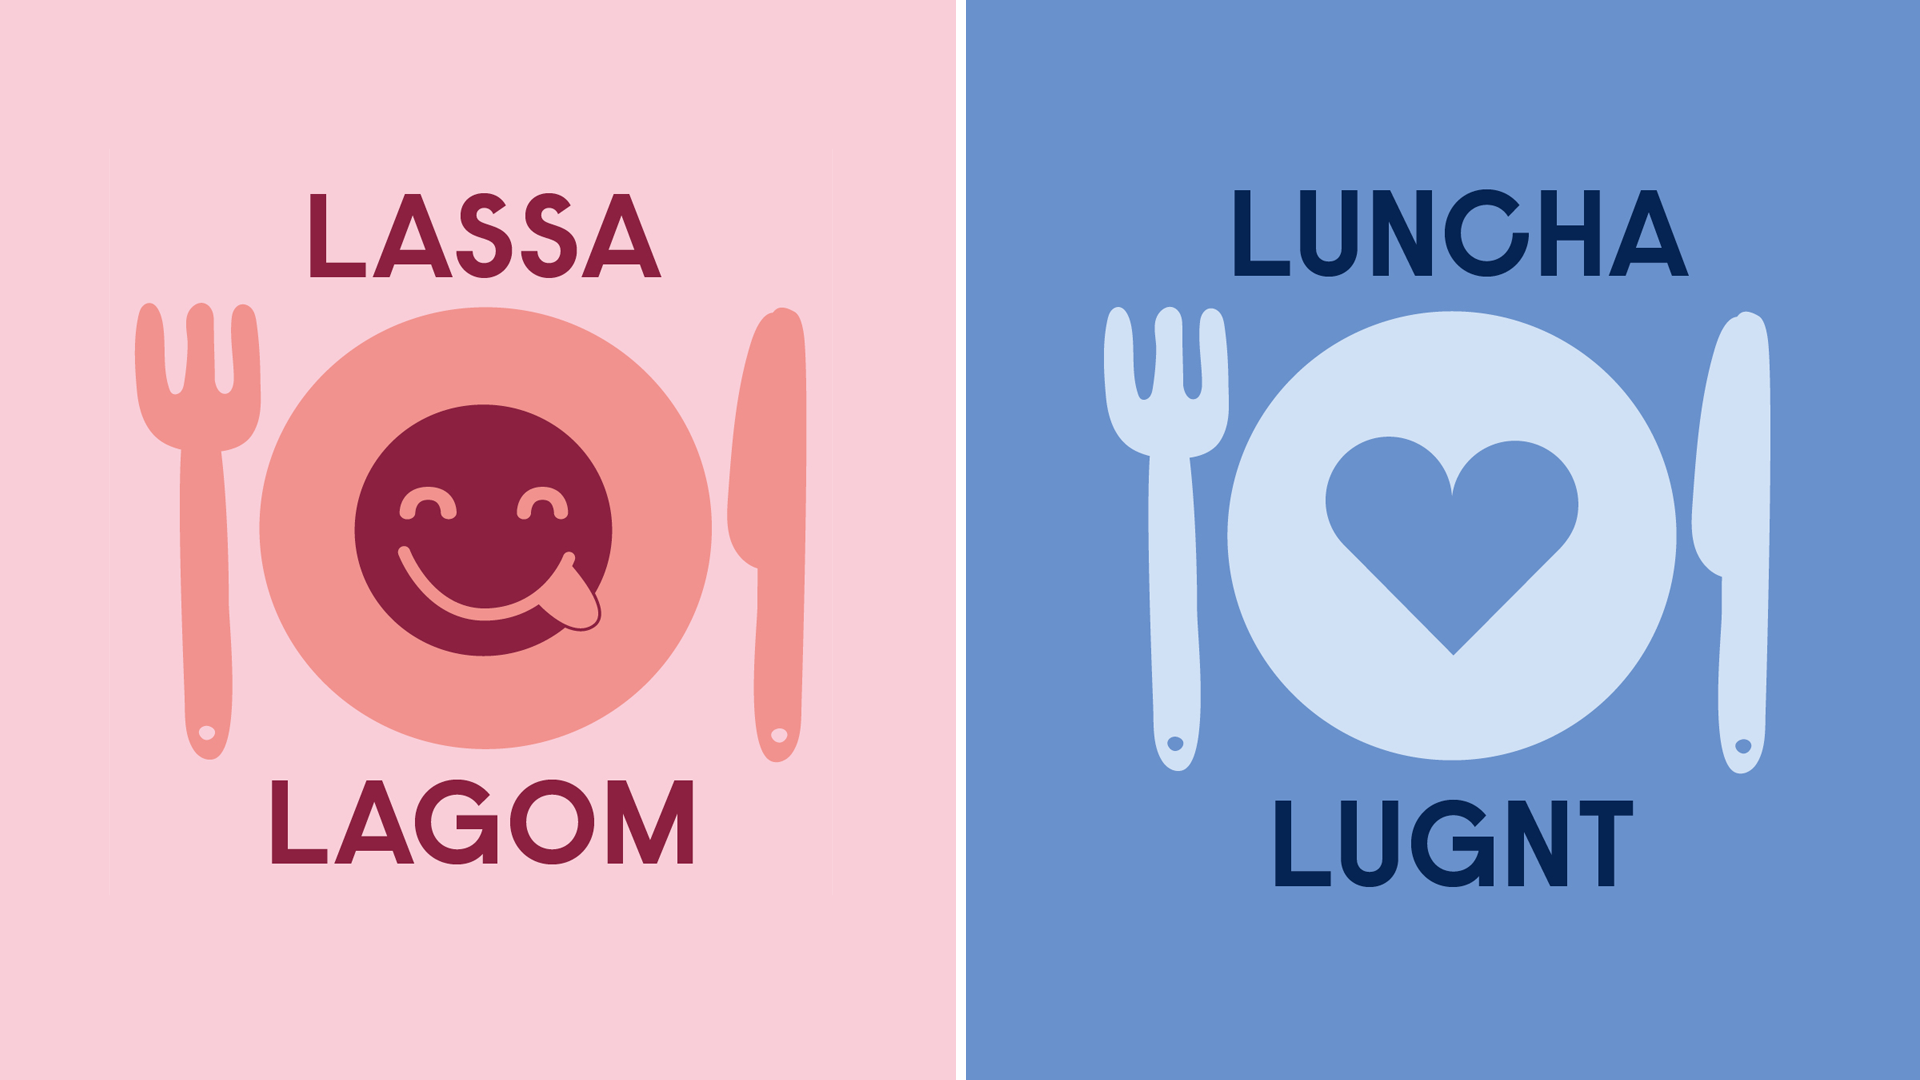 Två illustrationer med texterna "Lassa lagom" samt "Luncha lugnt".